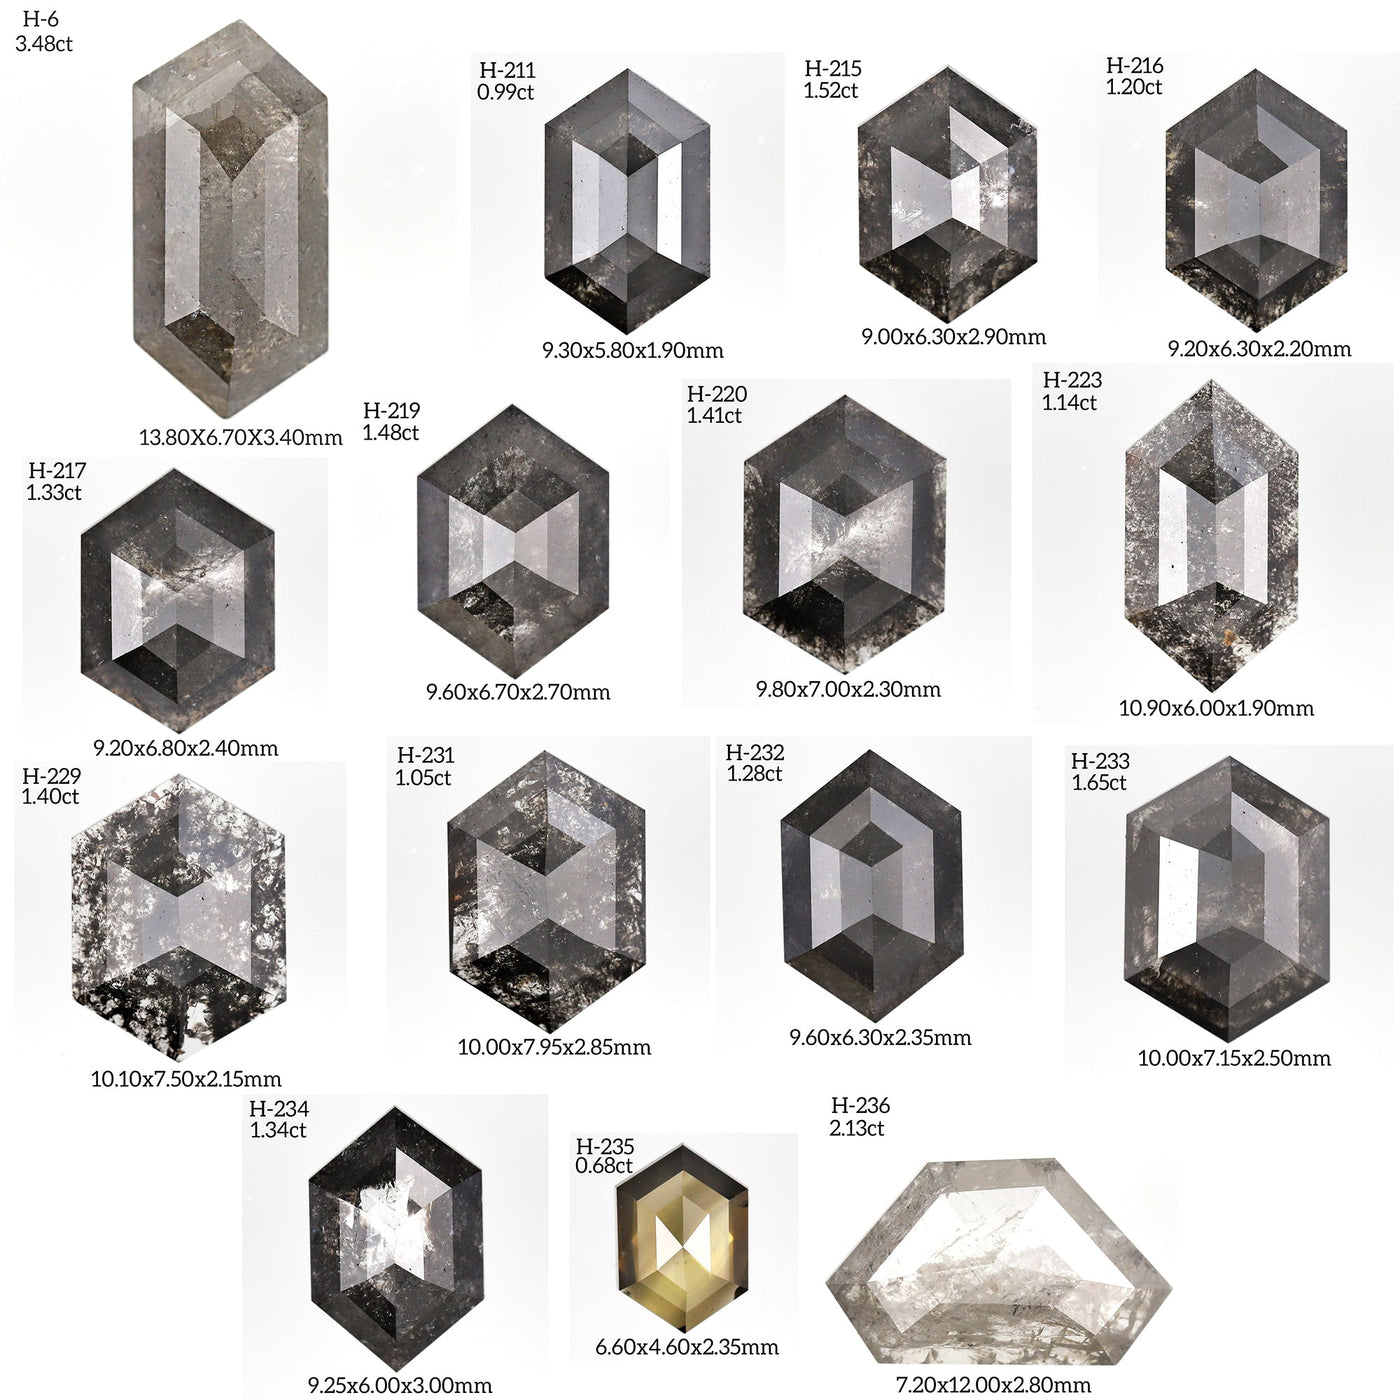 H136 - Salt and pepper hexagon diamond